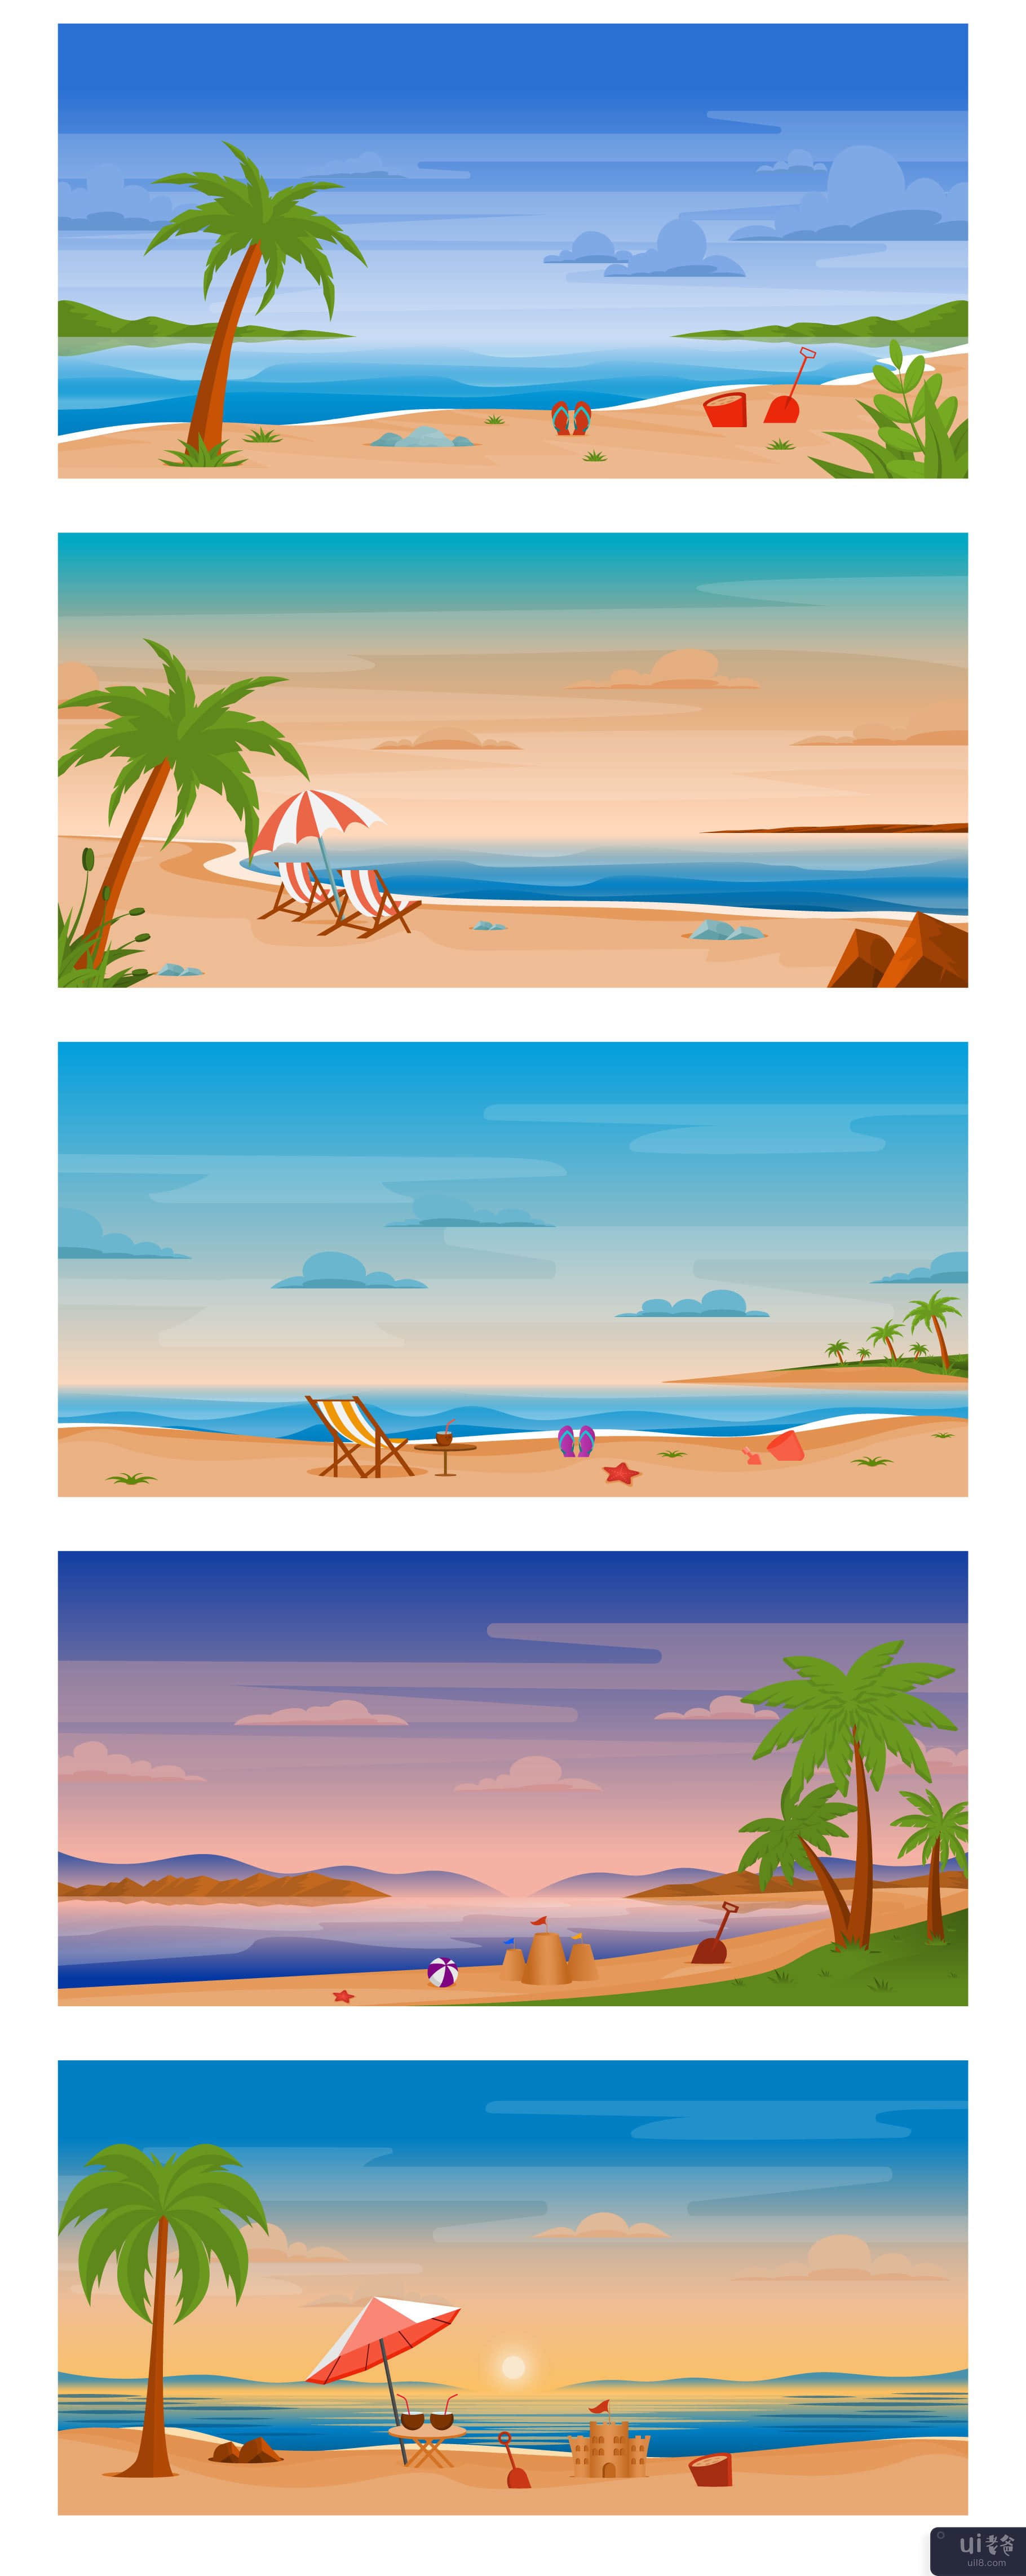 25个大海和海滩背景(25 Sea and Beach Backgrounds)插图2